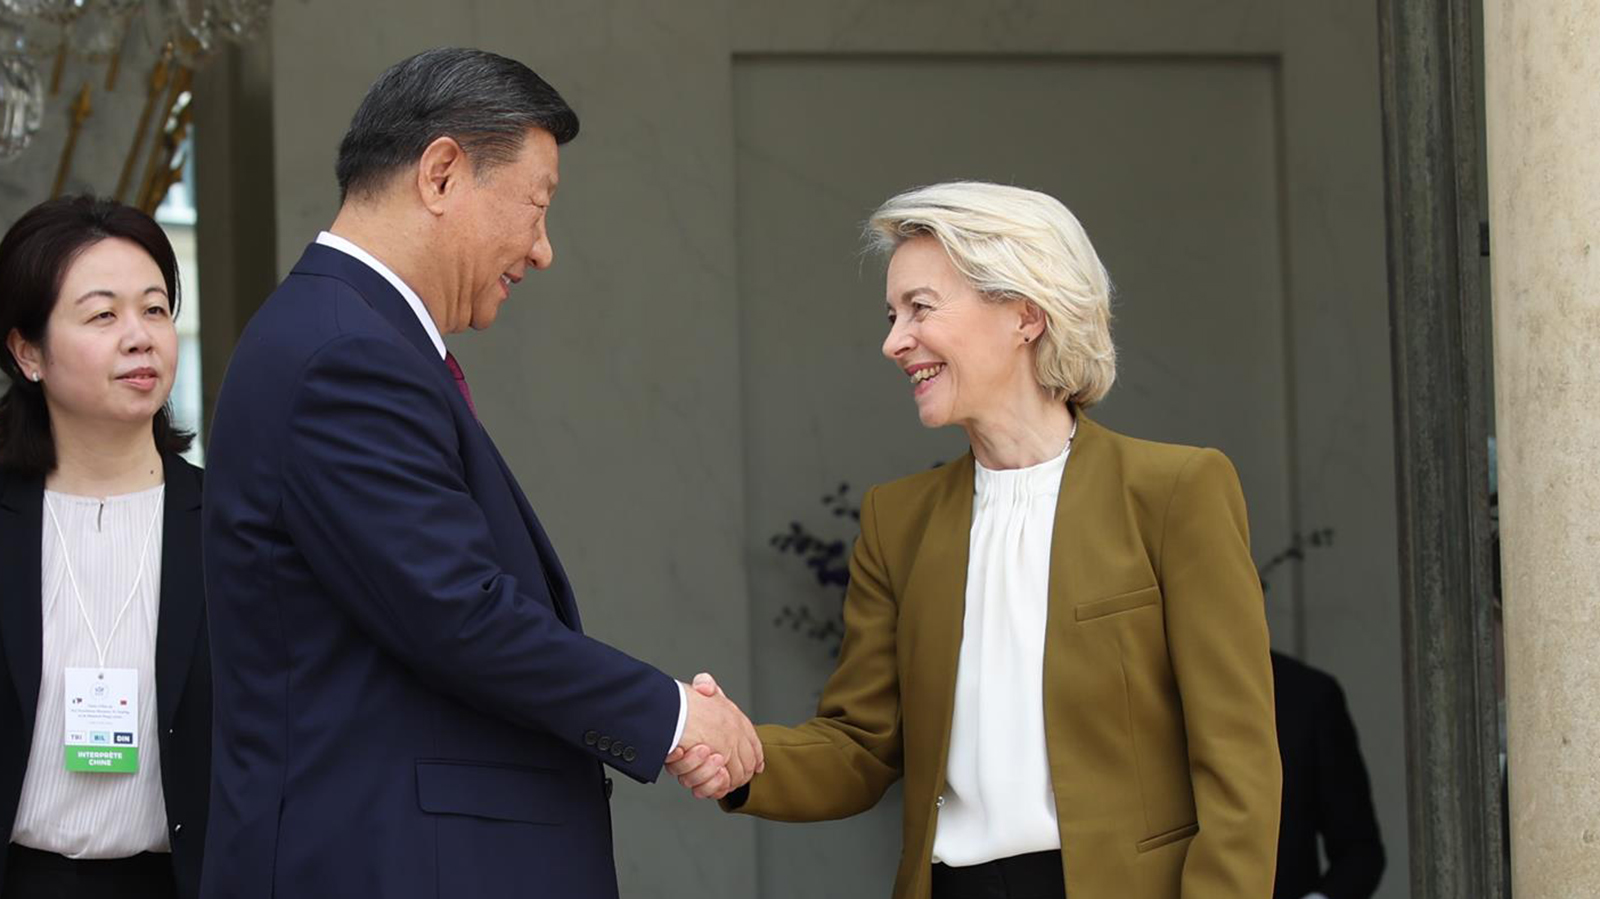 La presidenta de la Comisión Europea, Ursula von der Leyen, y el presidente de China, Xi Jinping, salen después de asistir a una reunión en el palacio presidencial del Elíseo. FOTO: Christophe Licoppe/Comunicación Europea / DPA